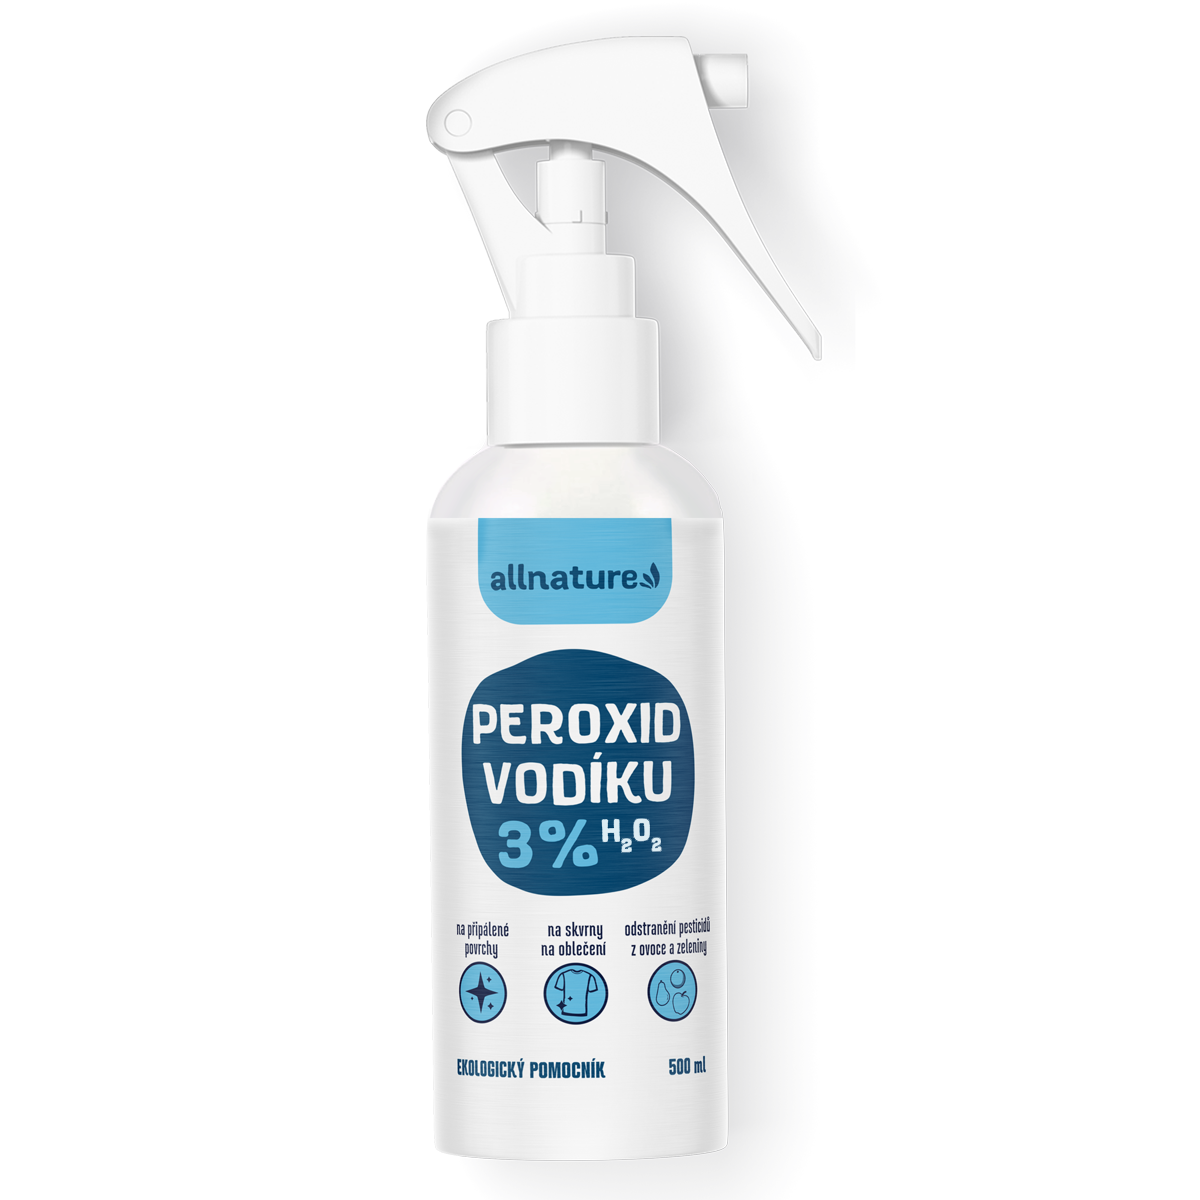 Allnature Peroxid vodíku 3% 500 ml - účinné proti skvrnám a bakteriím Allnature